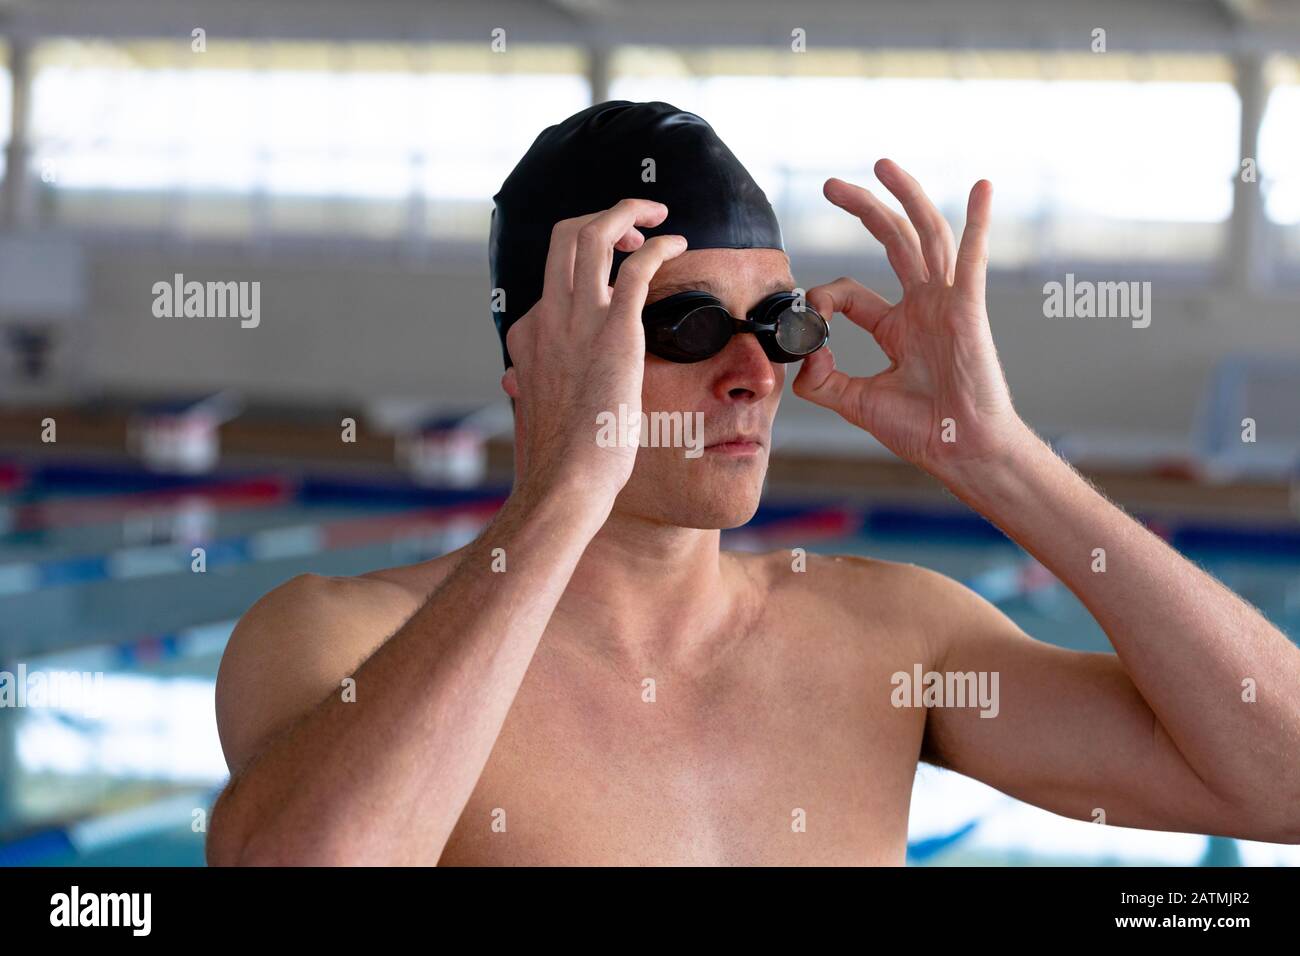 Nuotatore che si prepara a nuotare Foto Stock